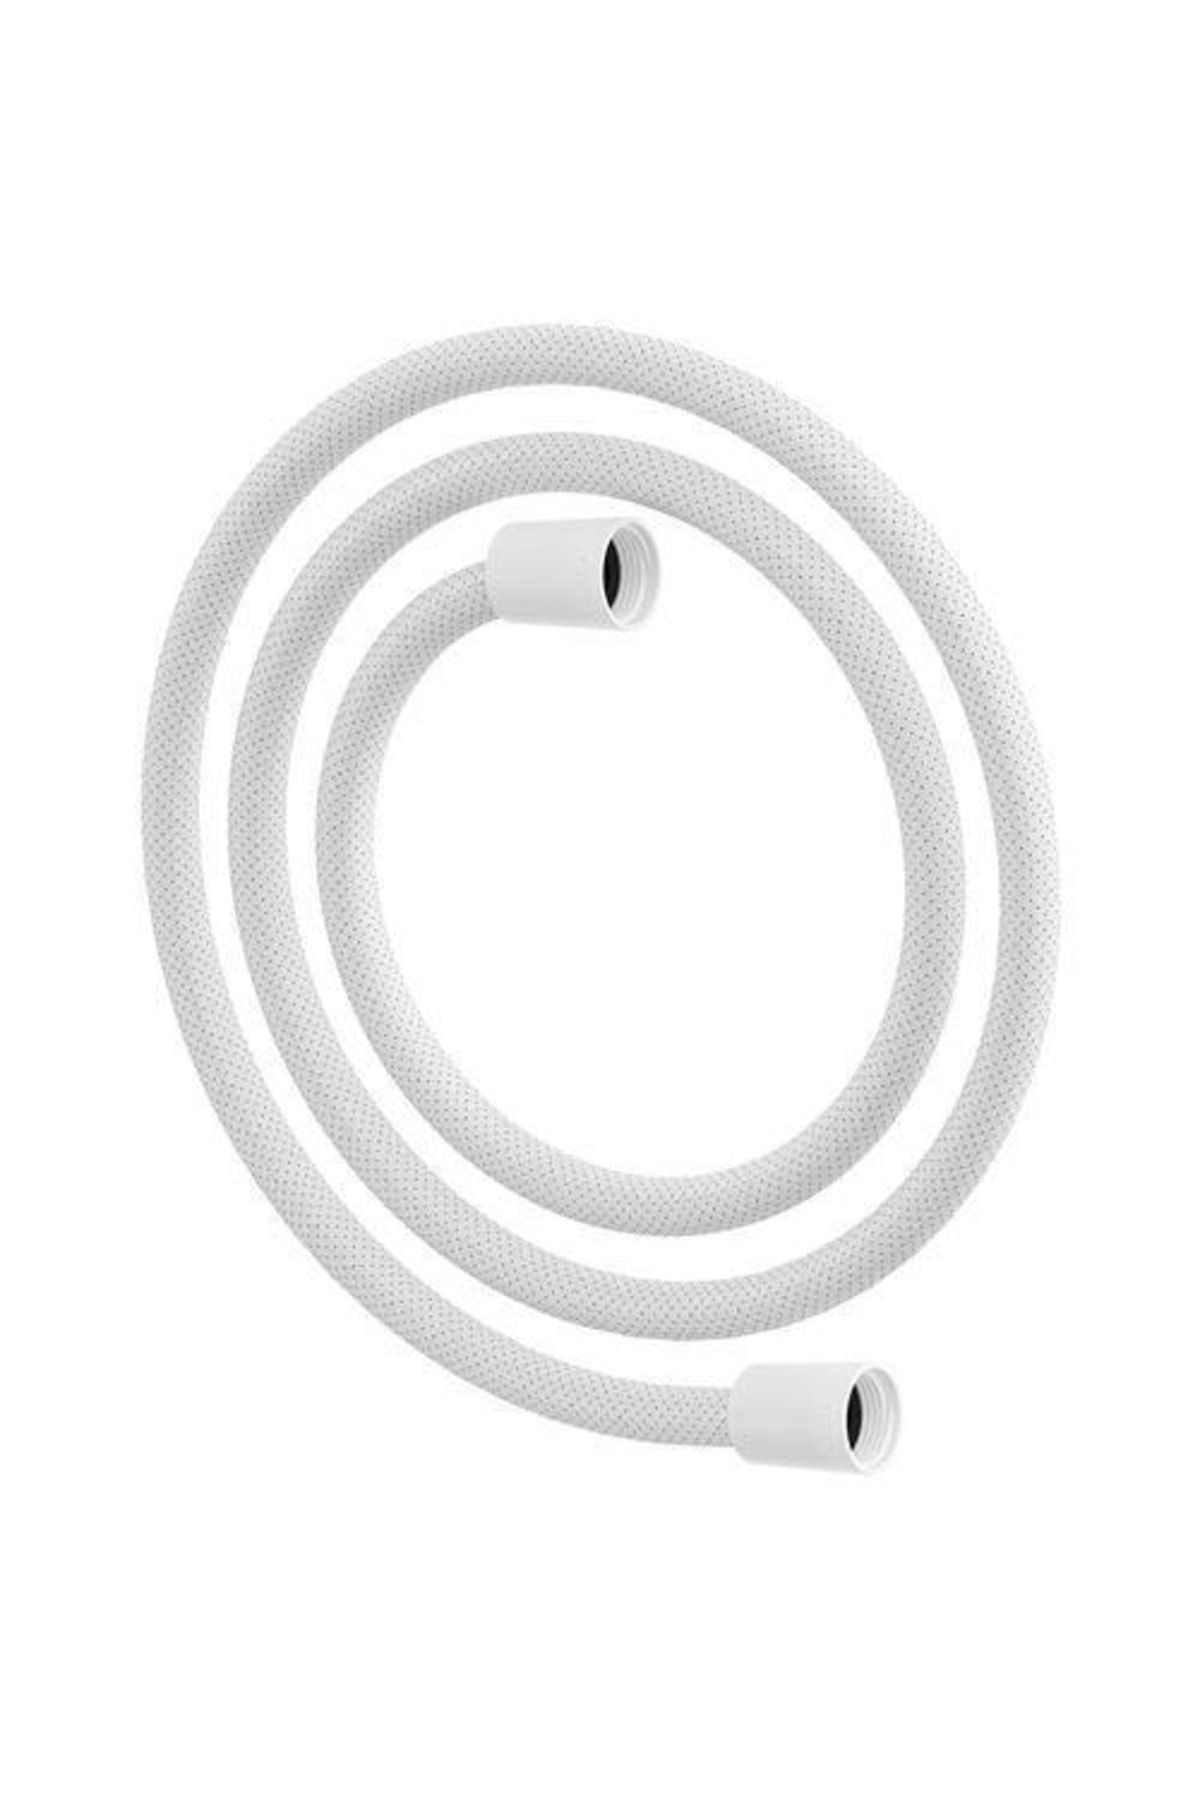 IKEA Lıllrevet Plastik Beyaz Duş Başlığı Spirali 150 Cm